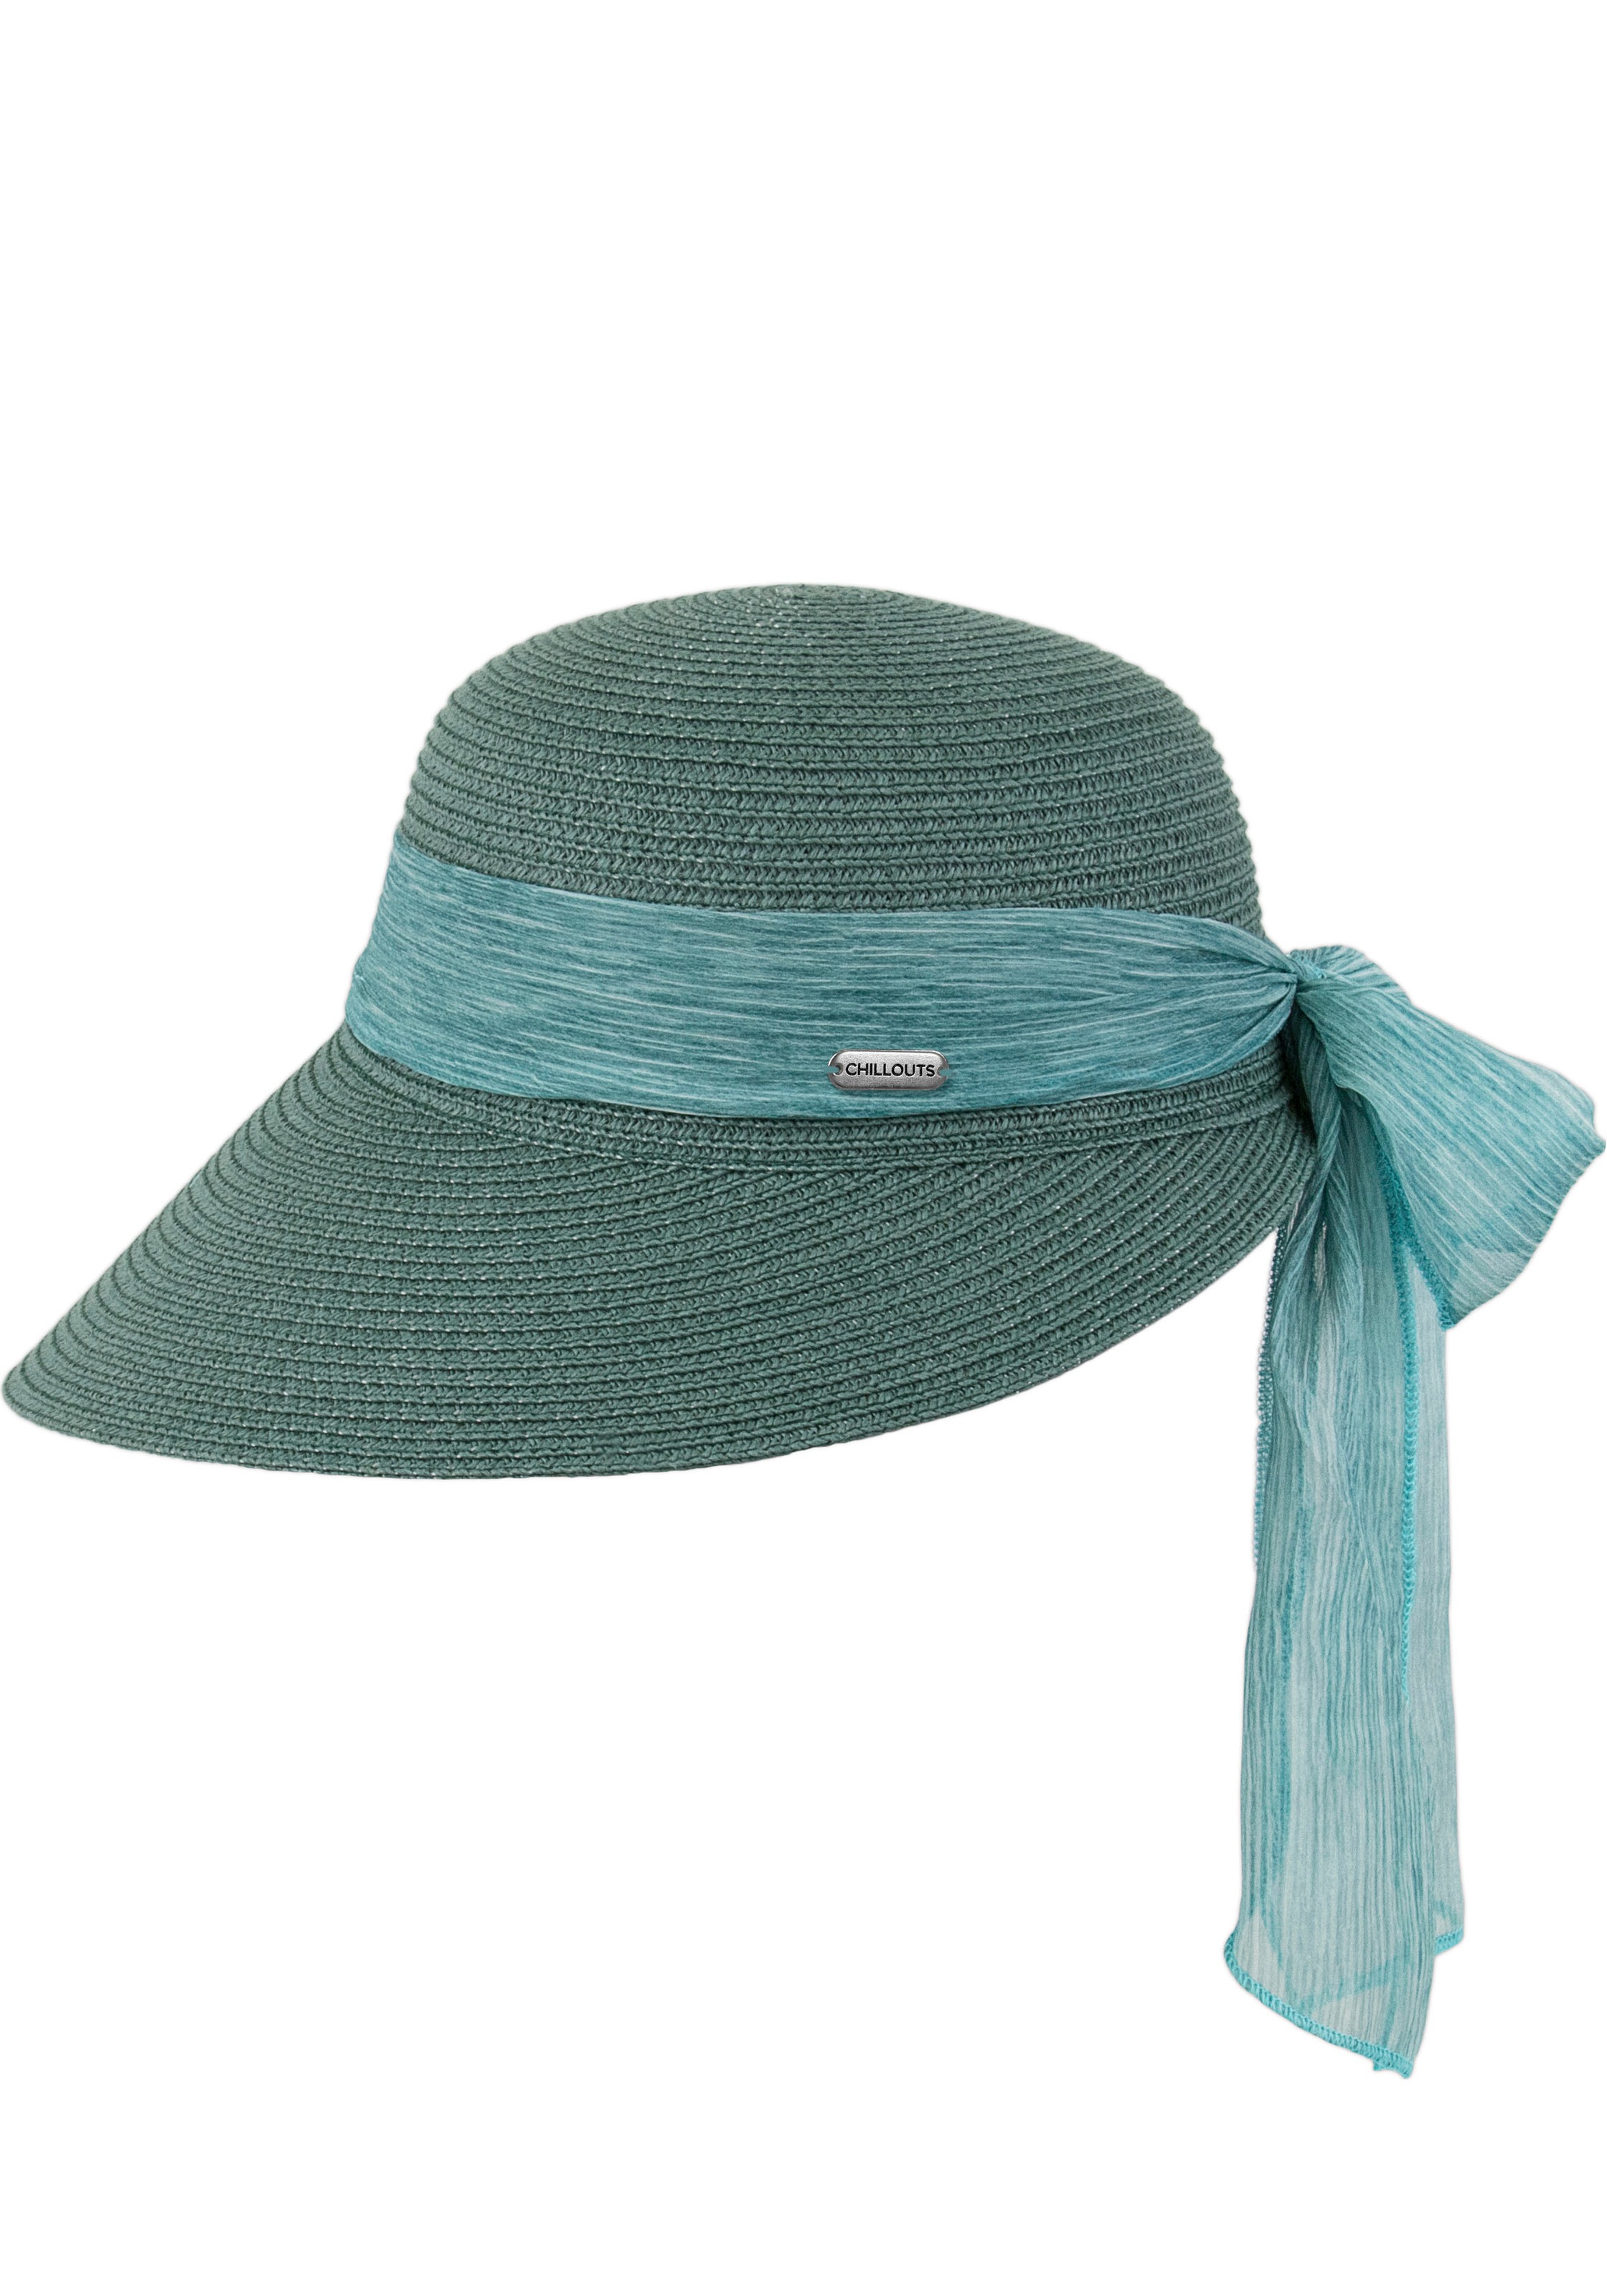 chillouts Strohhut »Lafayette Hat« UV protection: UPF 50+